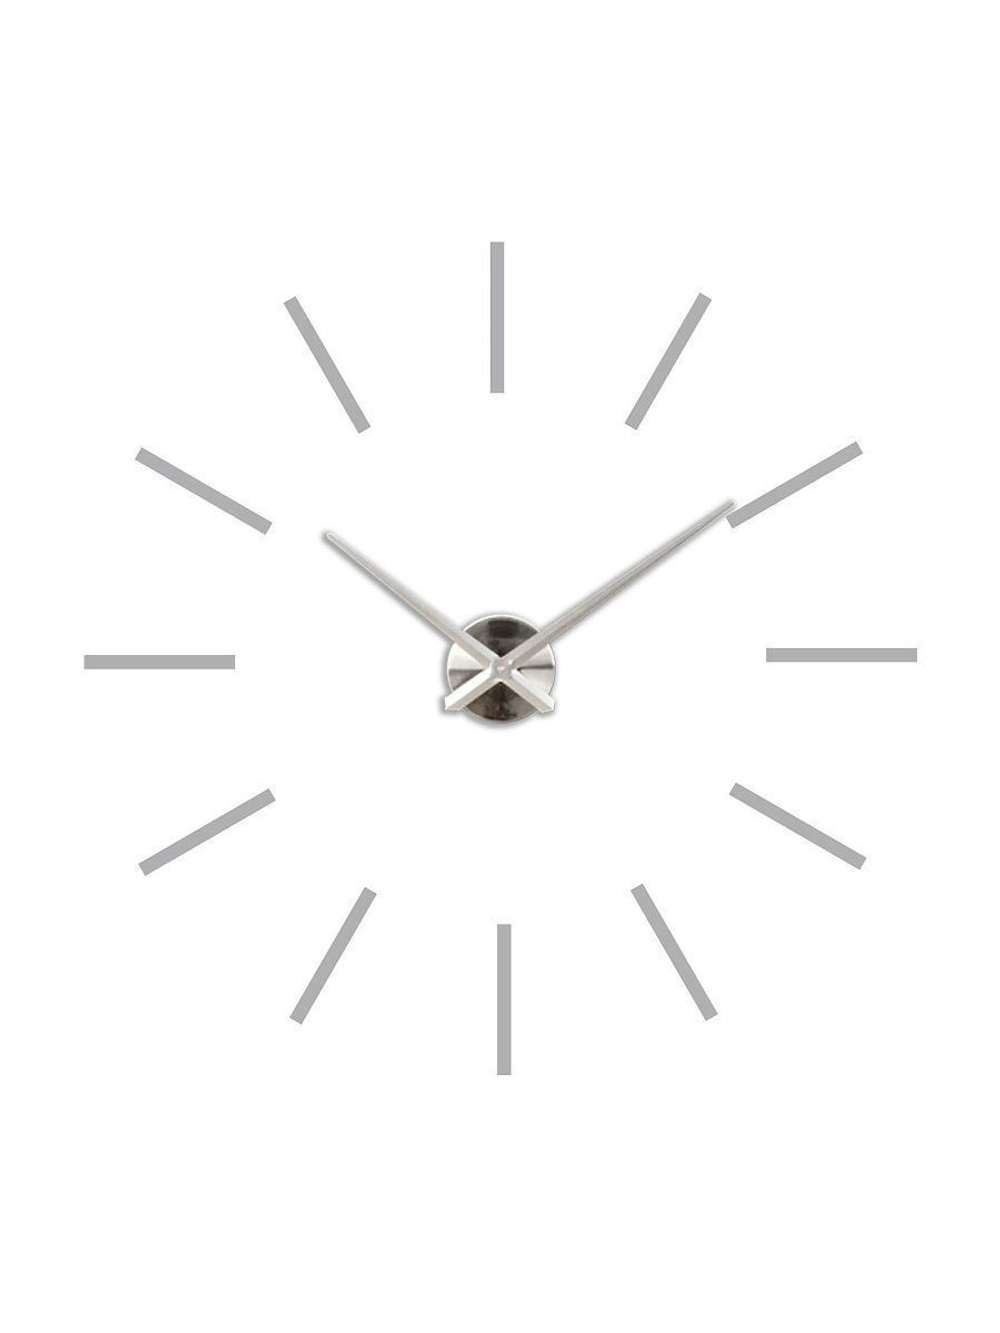 Настенные 3D часы большие самоклеящиеся D 100 120 см / Часы настенные 3d / Часы 3d настенные